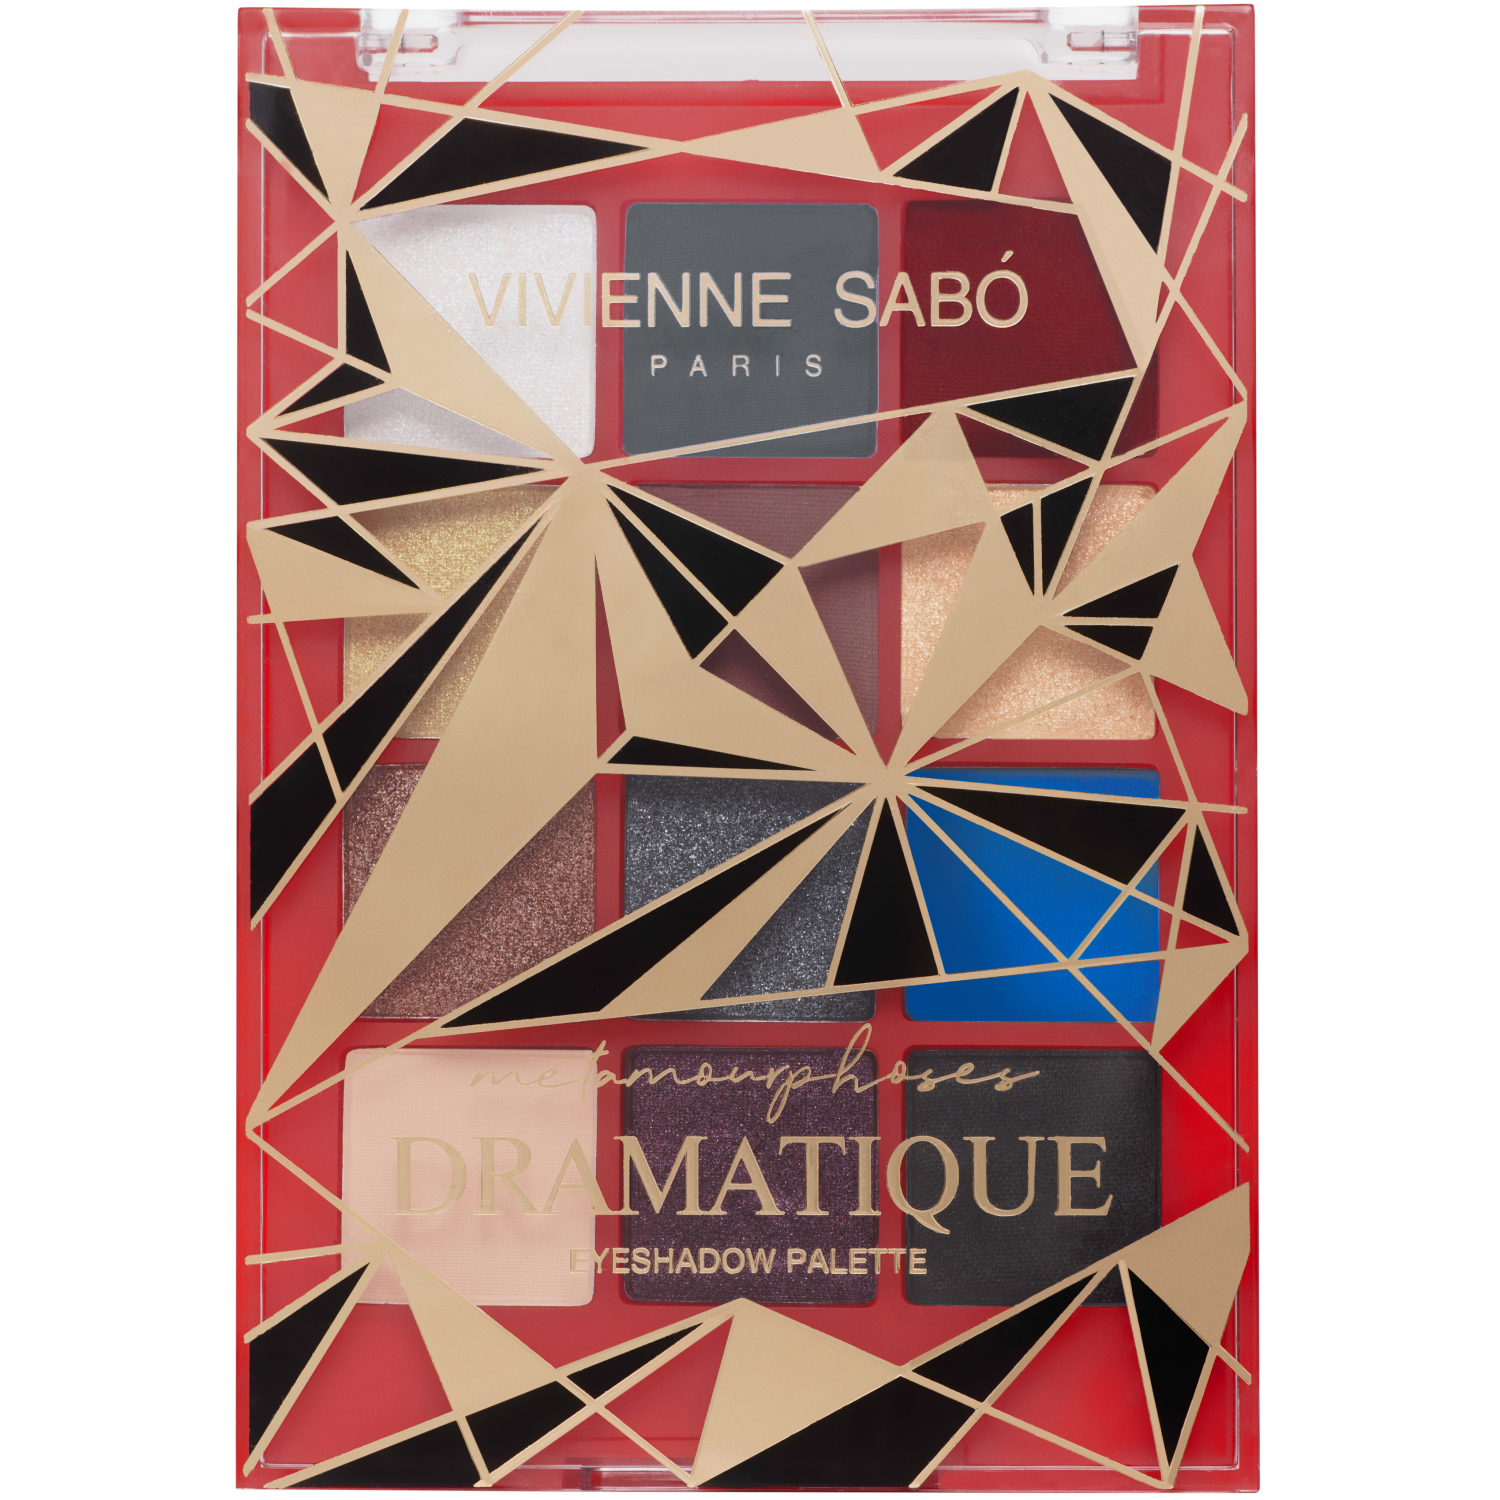 Палетка теней Vivienne Sabo Metamourphoses Dramatique 03 палетка теней для век 54 а